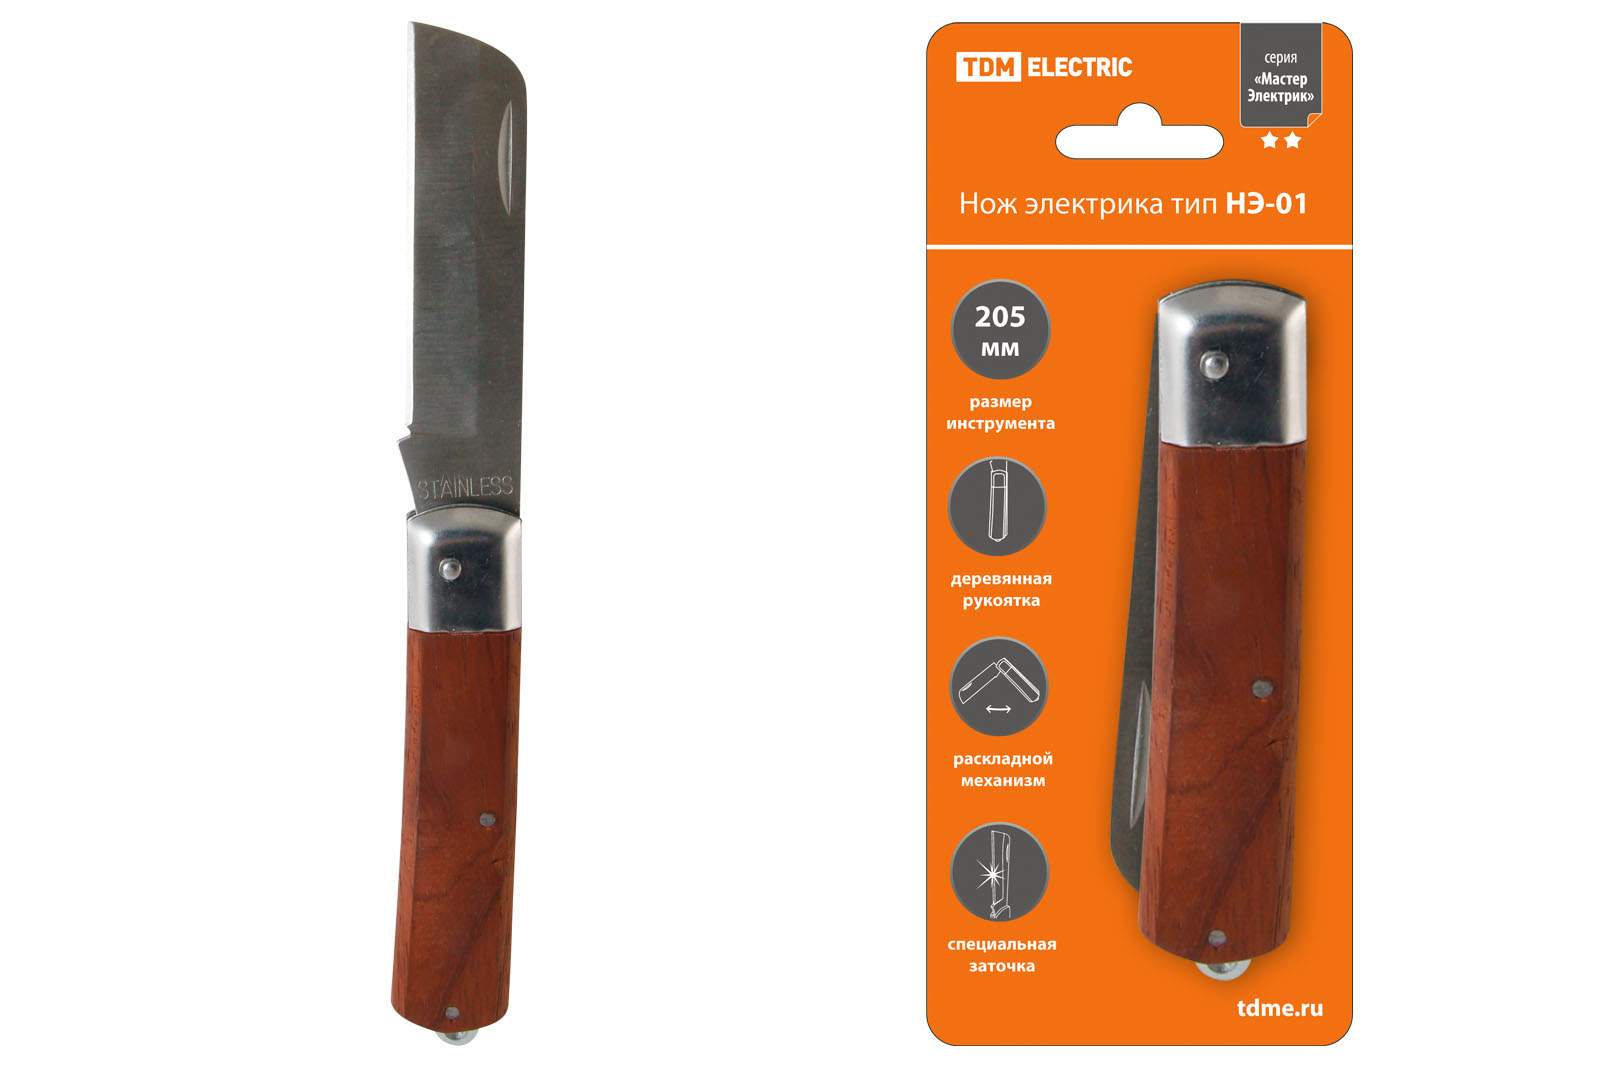 нож электрика нэ-01, 205 мм, деревянная рукоятка "мастерэлектрик" tdm от BTSprom.by